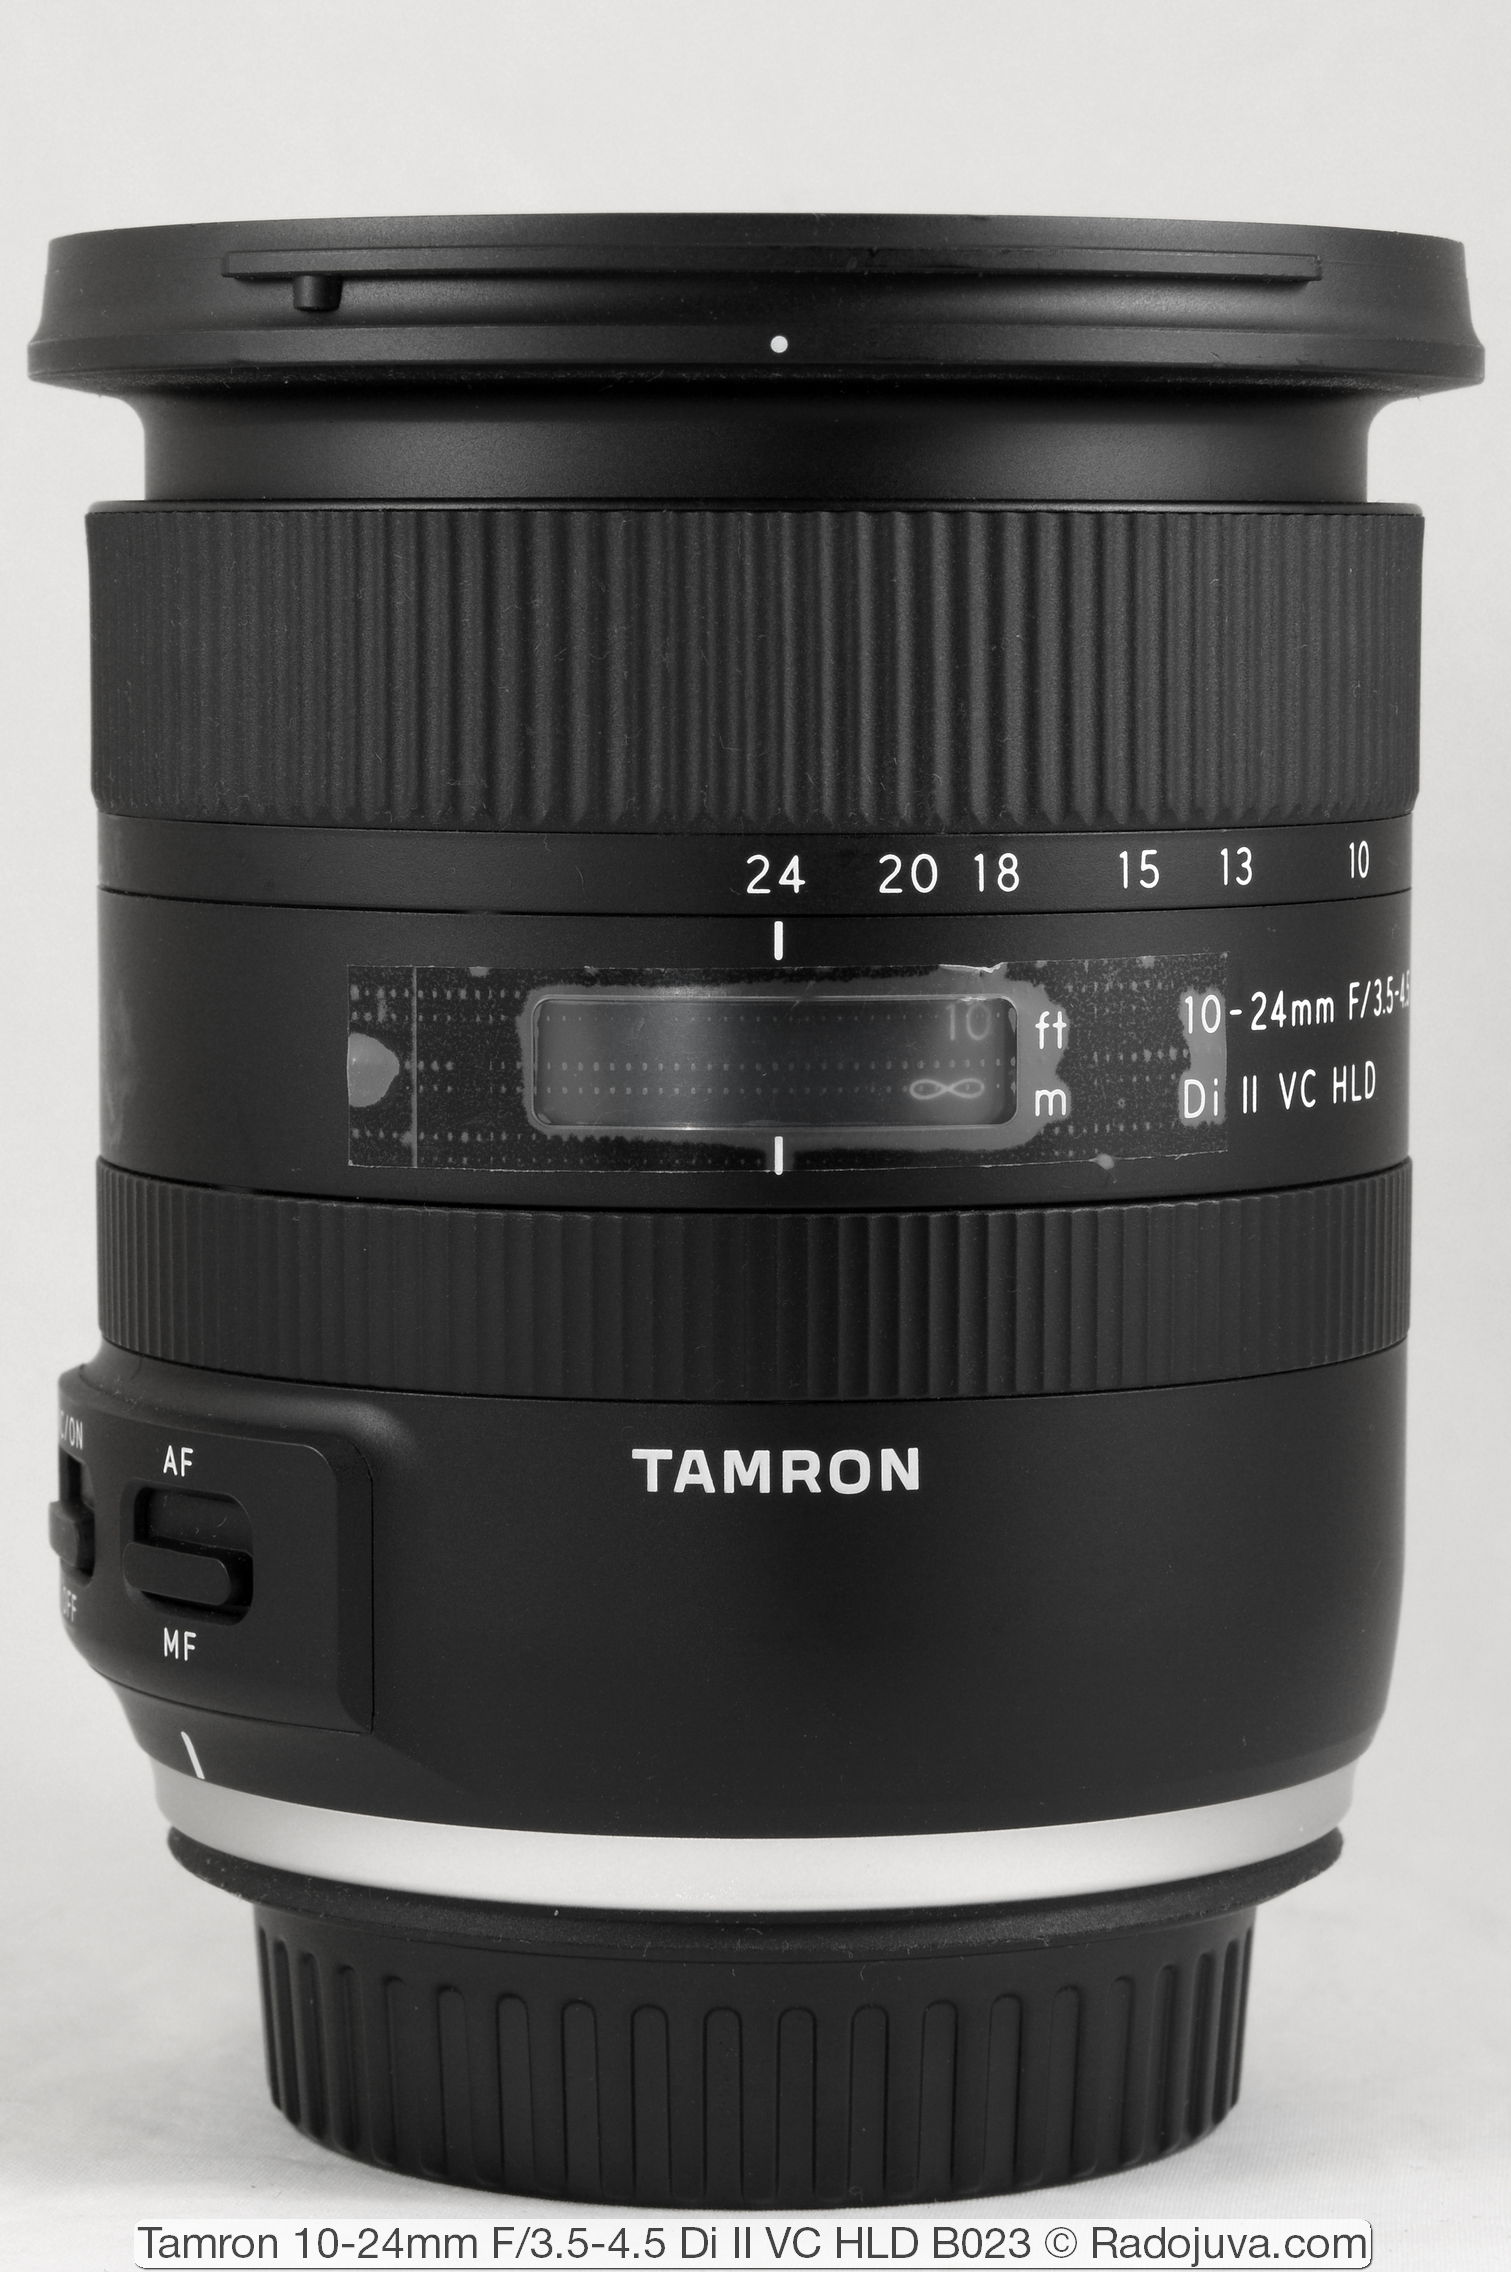 Tamron 10-24mm F / 3.5-4.5 Di II VC HLD B023